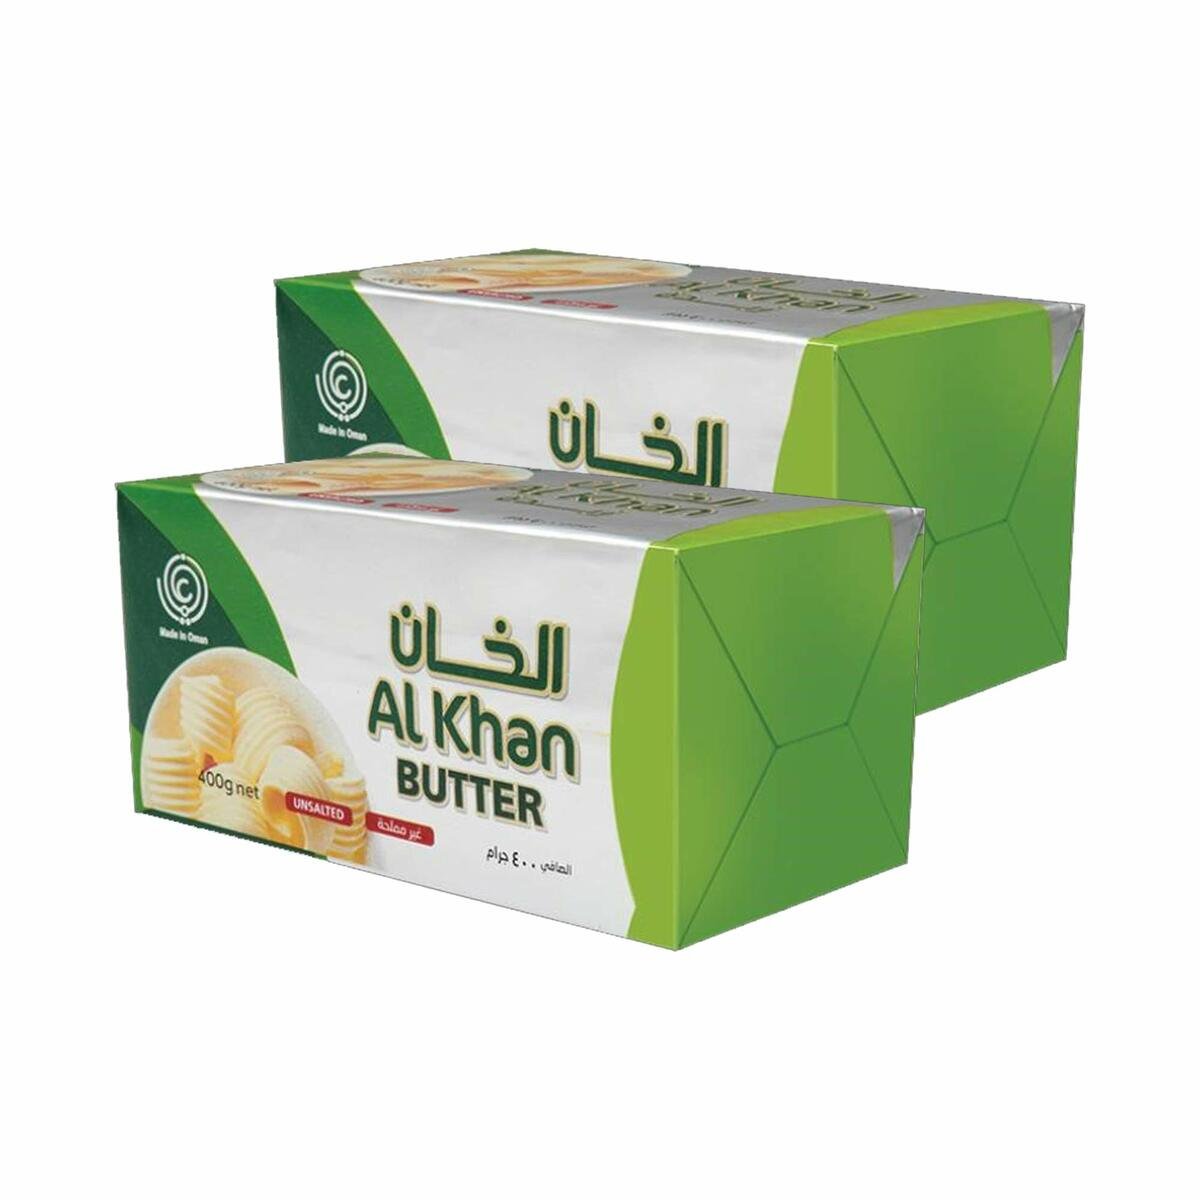 Al Khan Butter Unsalted 2 x 400g